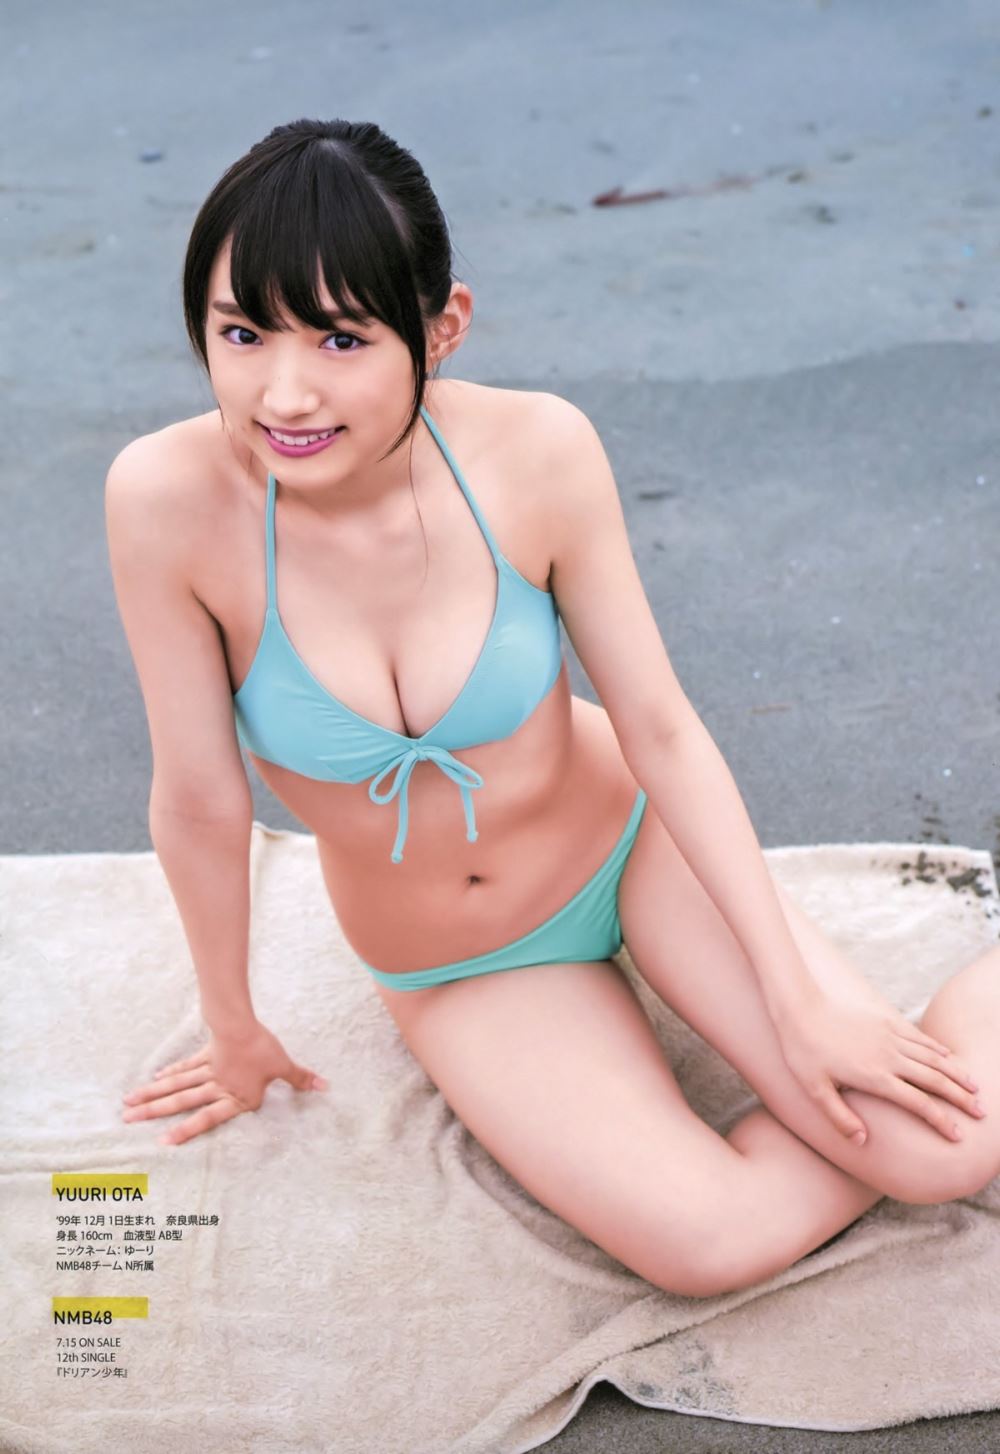 太田夢莉 1万年に1人 可愛い アイドル 水着 画像 24